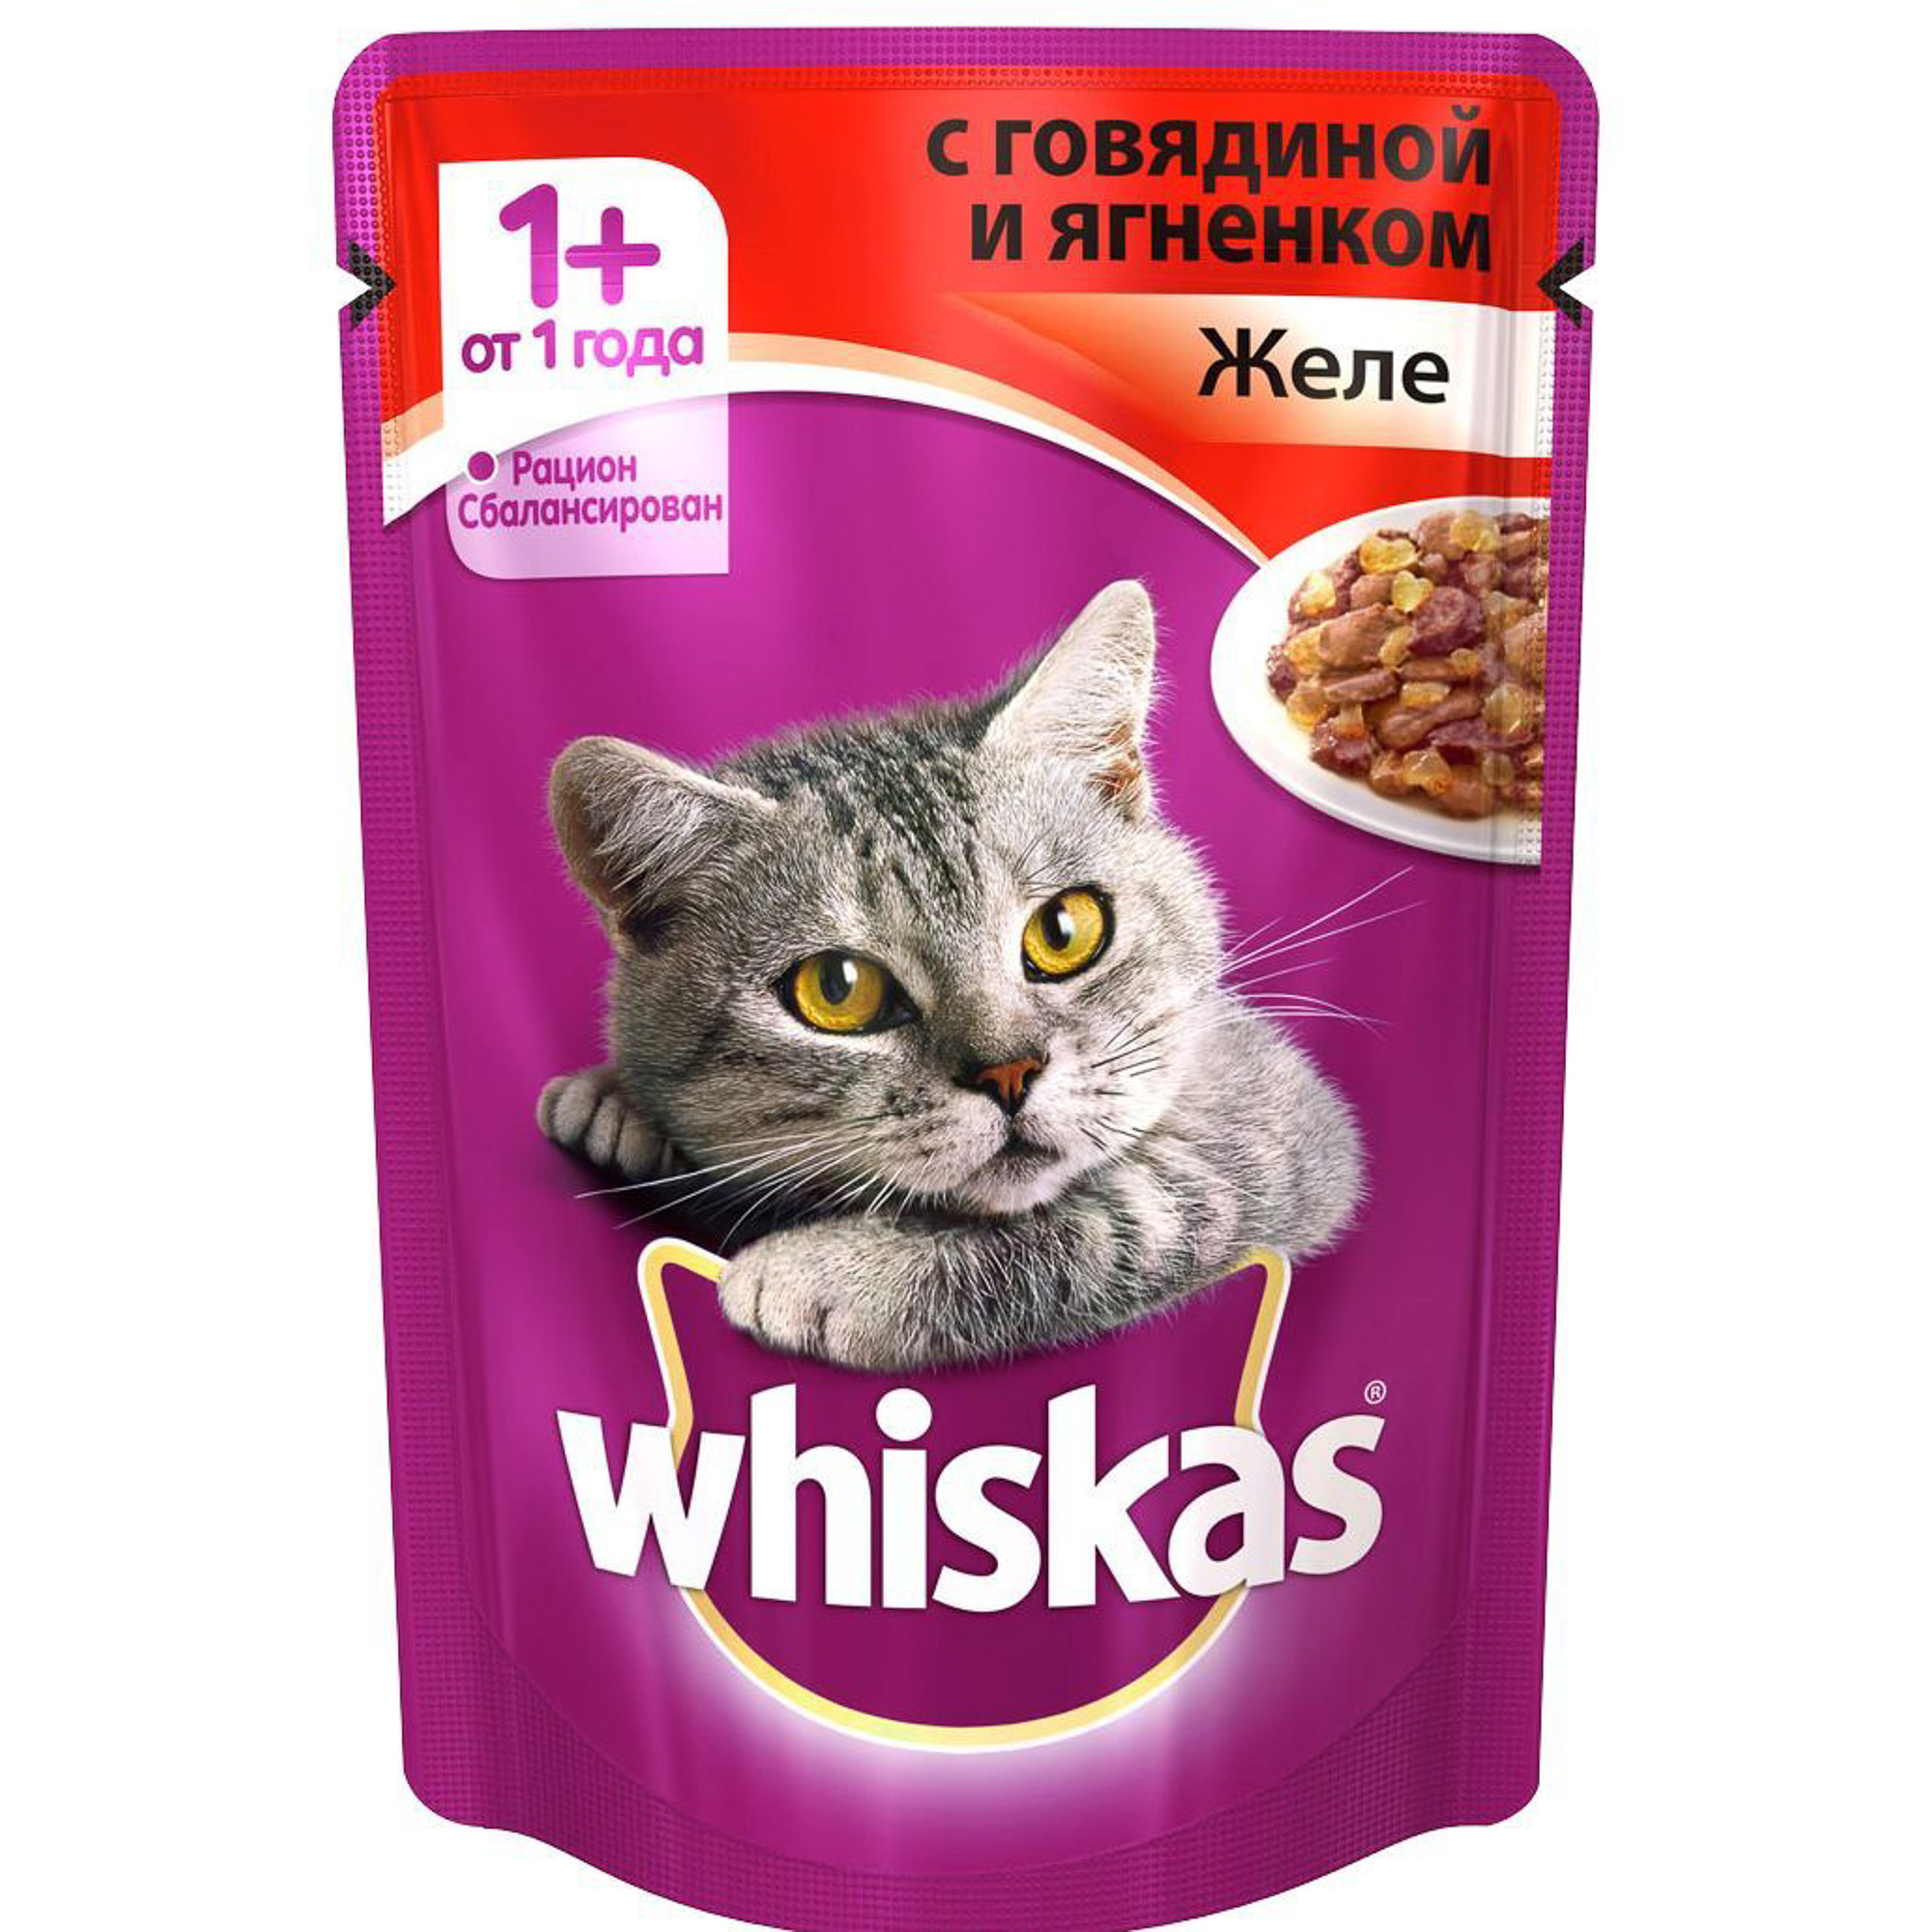 фото Корм для кошек whiskas для кошек от 1 года, желе с говядиной и ягненком, 85г